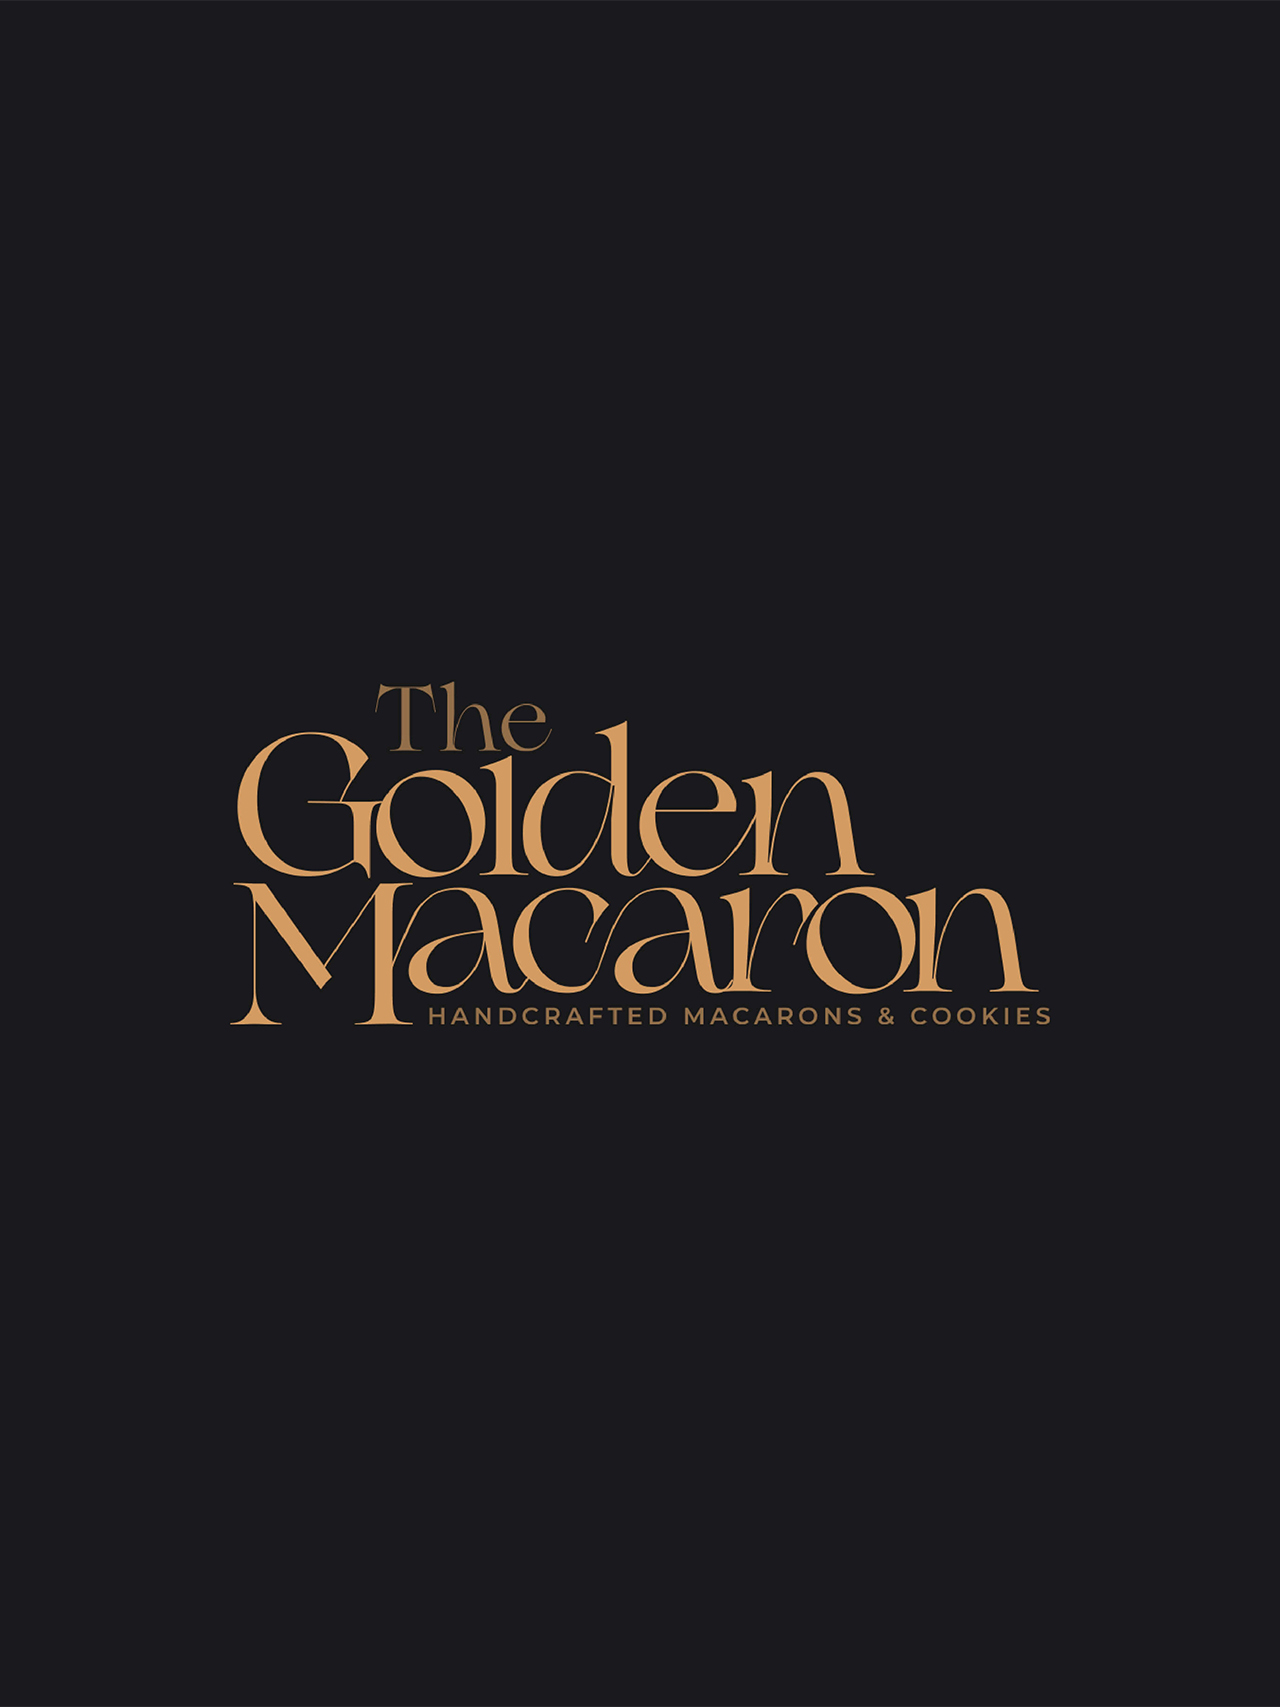 The Golden Macaron Logo